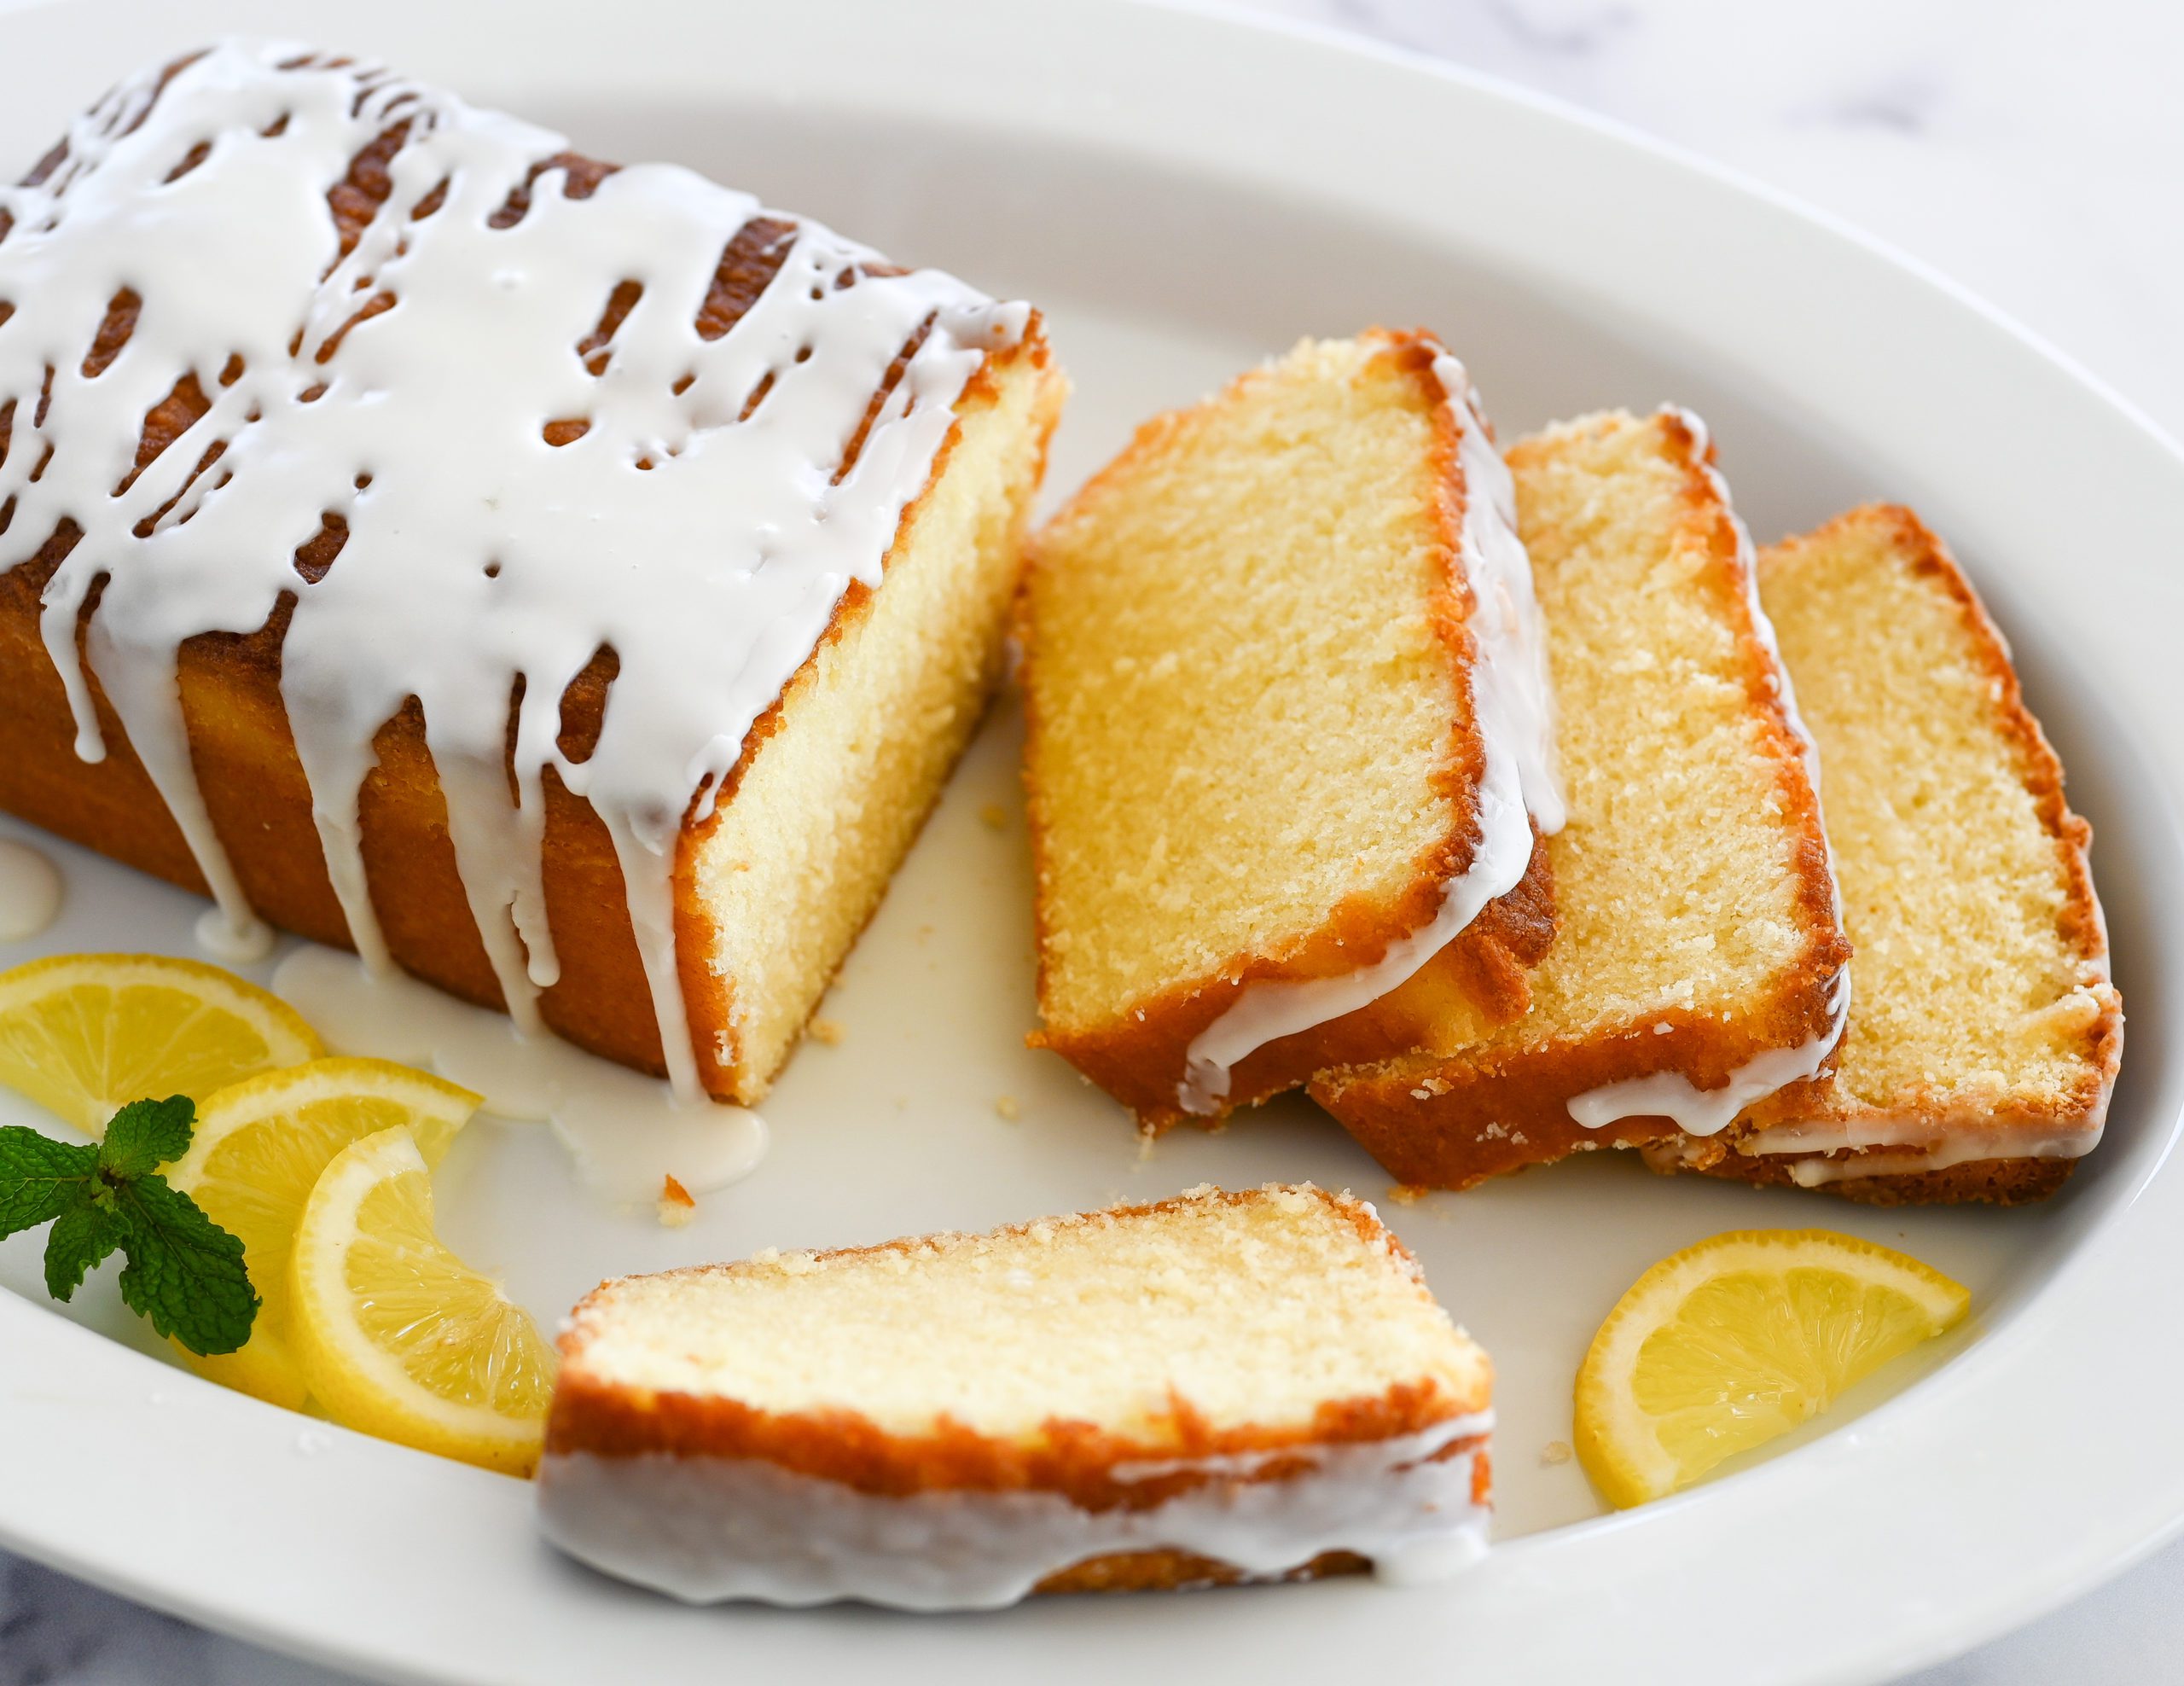 Easy Mini Lemon Bundt Cakes - Practically Homemade